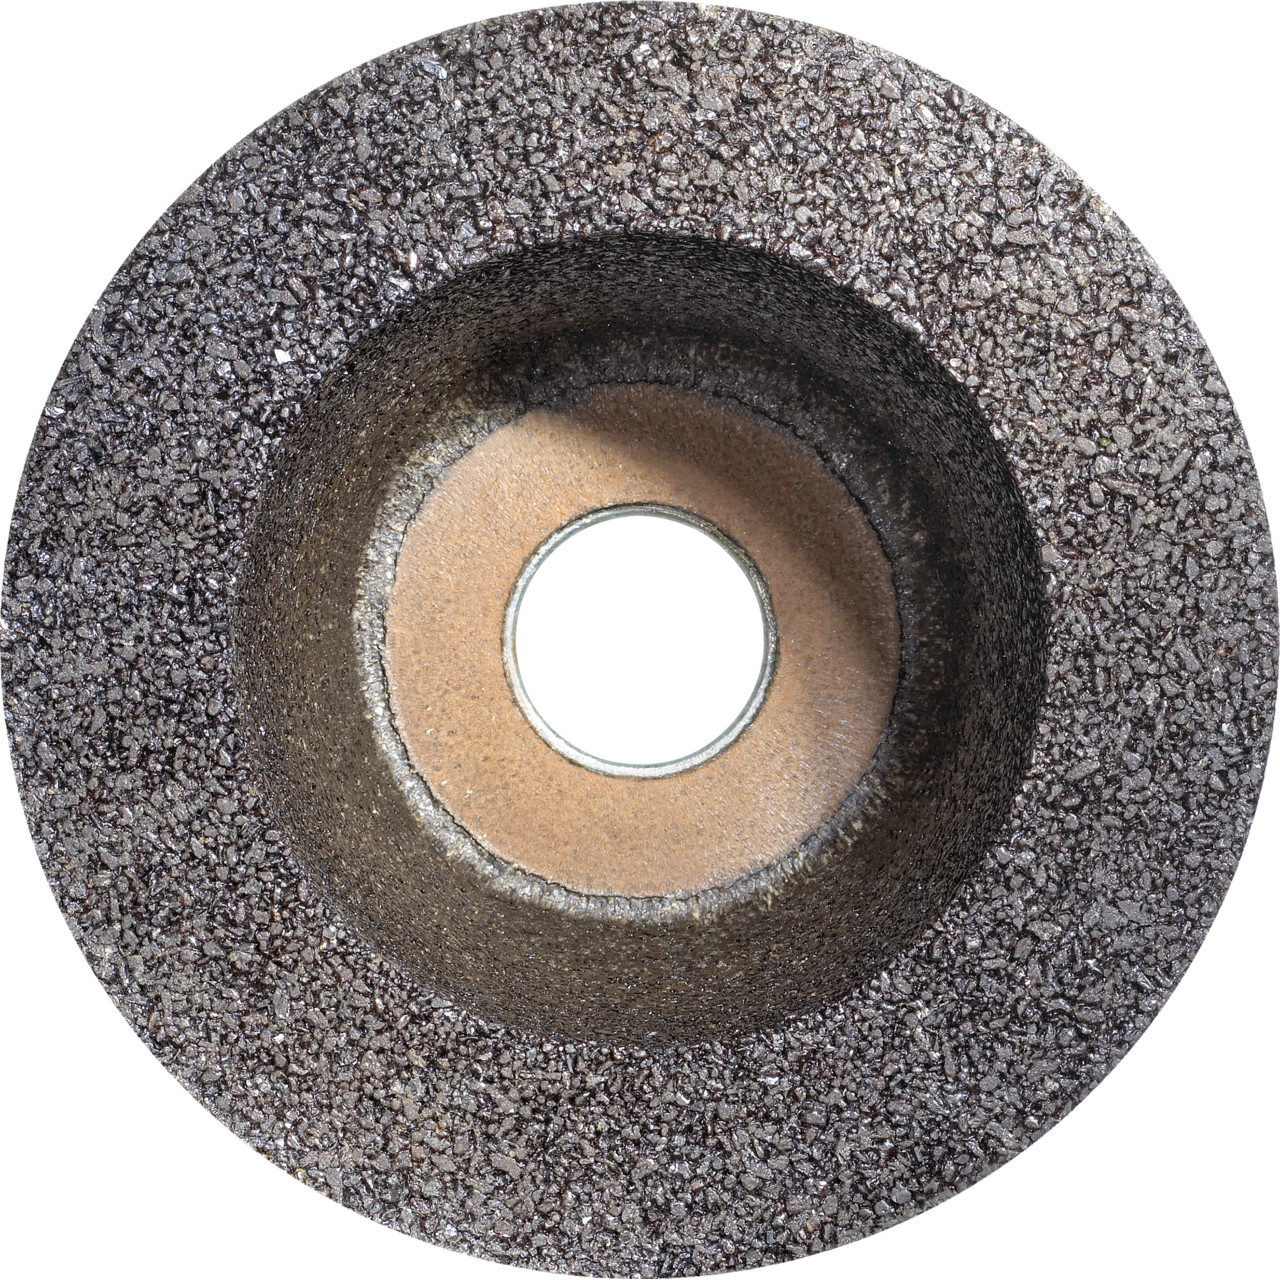 Tazza in resina sintetica TYROLIT D/JxDxH 110/90x55x22,23 Per pietra, forma: ruota a tazza 11BT, Art. 342583